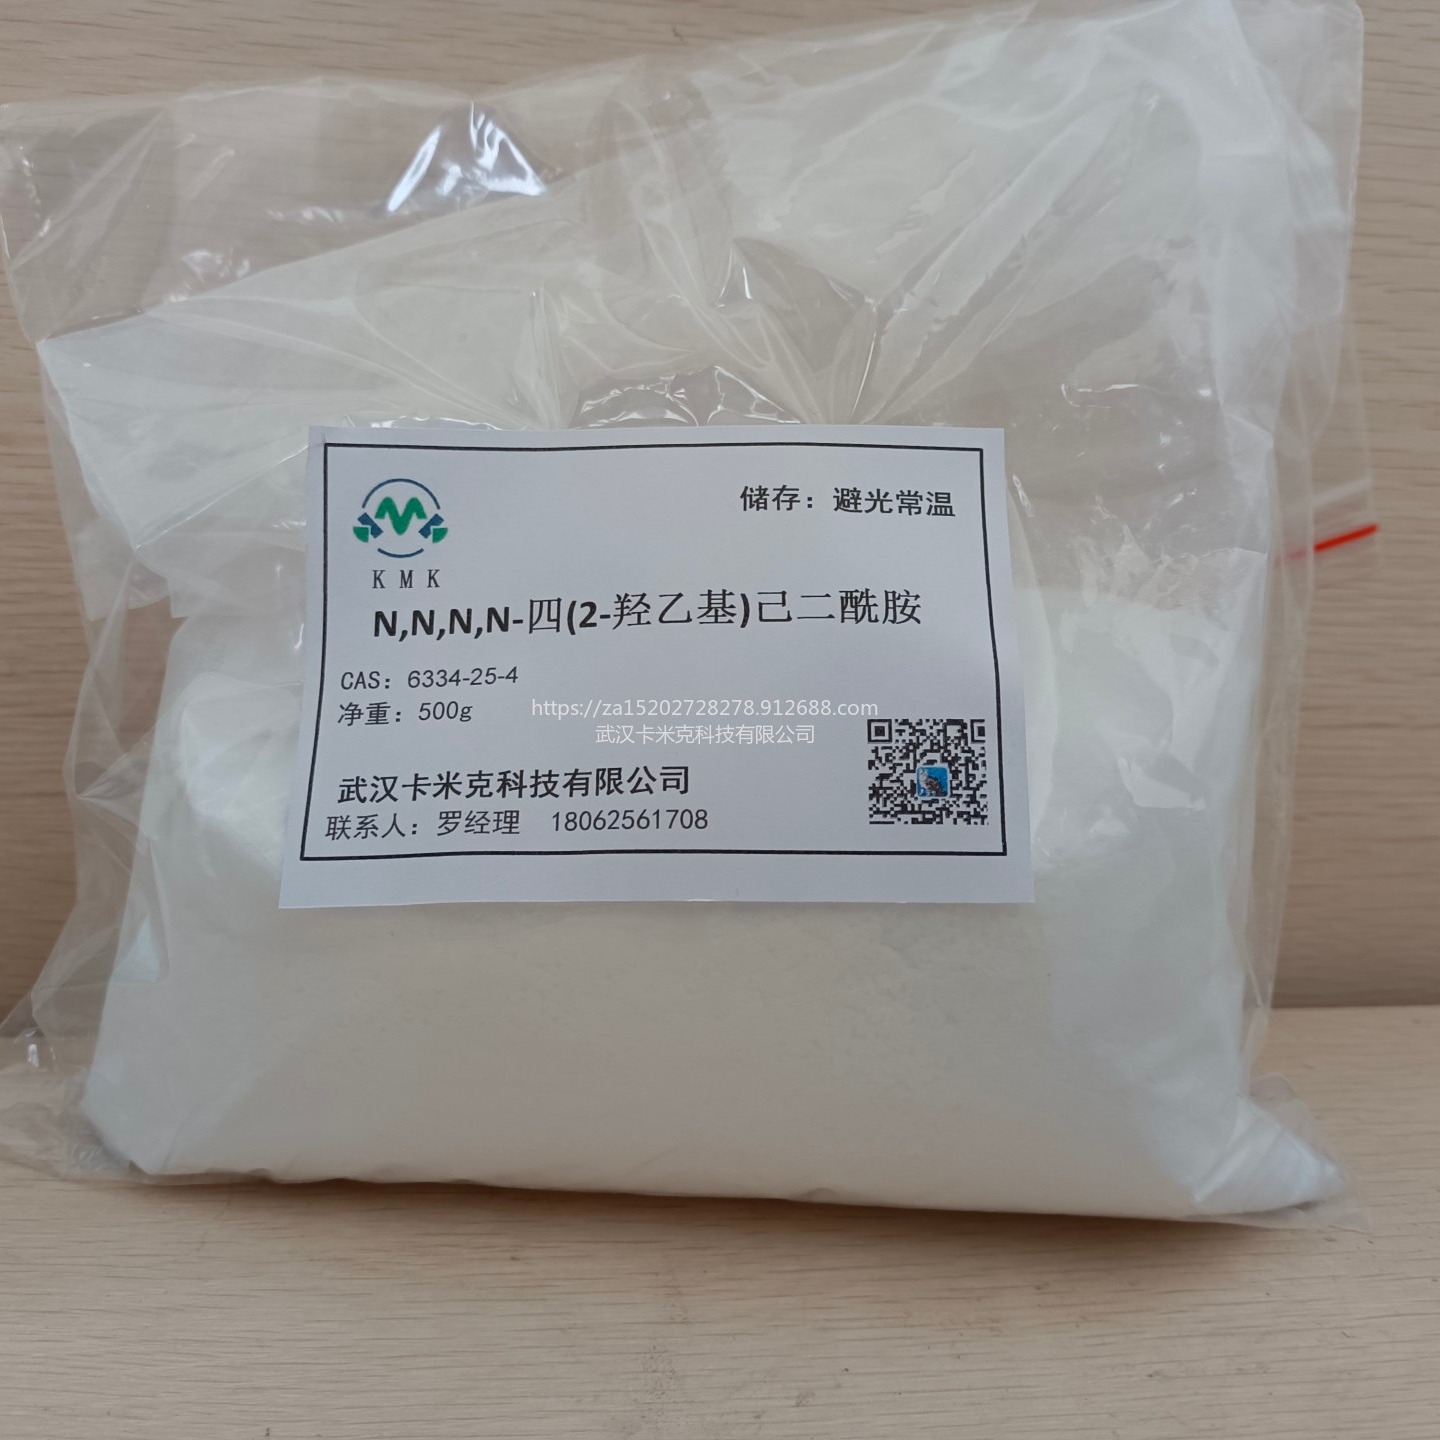 羟烷基酰胺（HAA） 聚酯固化剂 6334-25-4 厂家 kmk粉末涂料固化剂